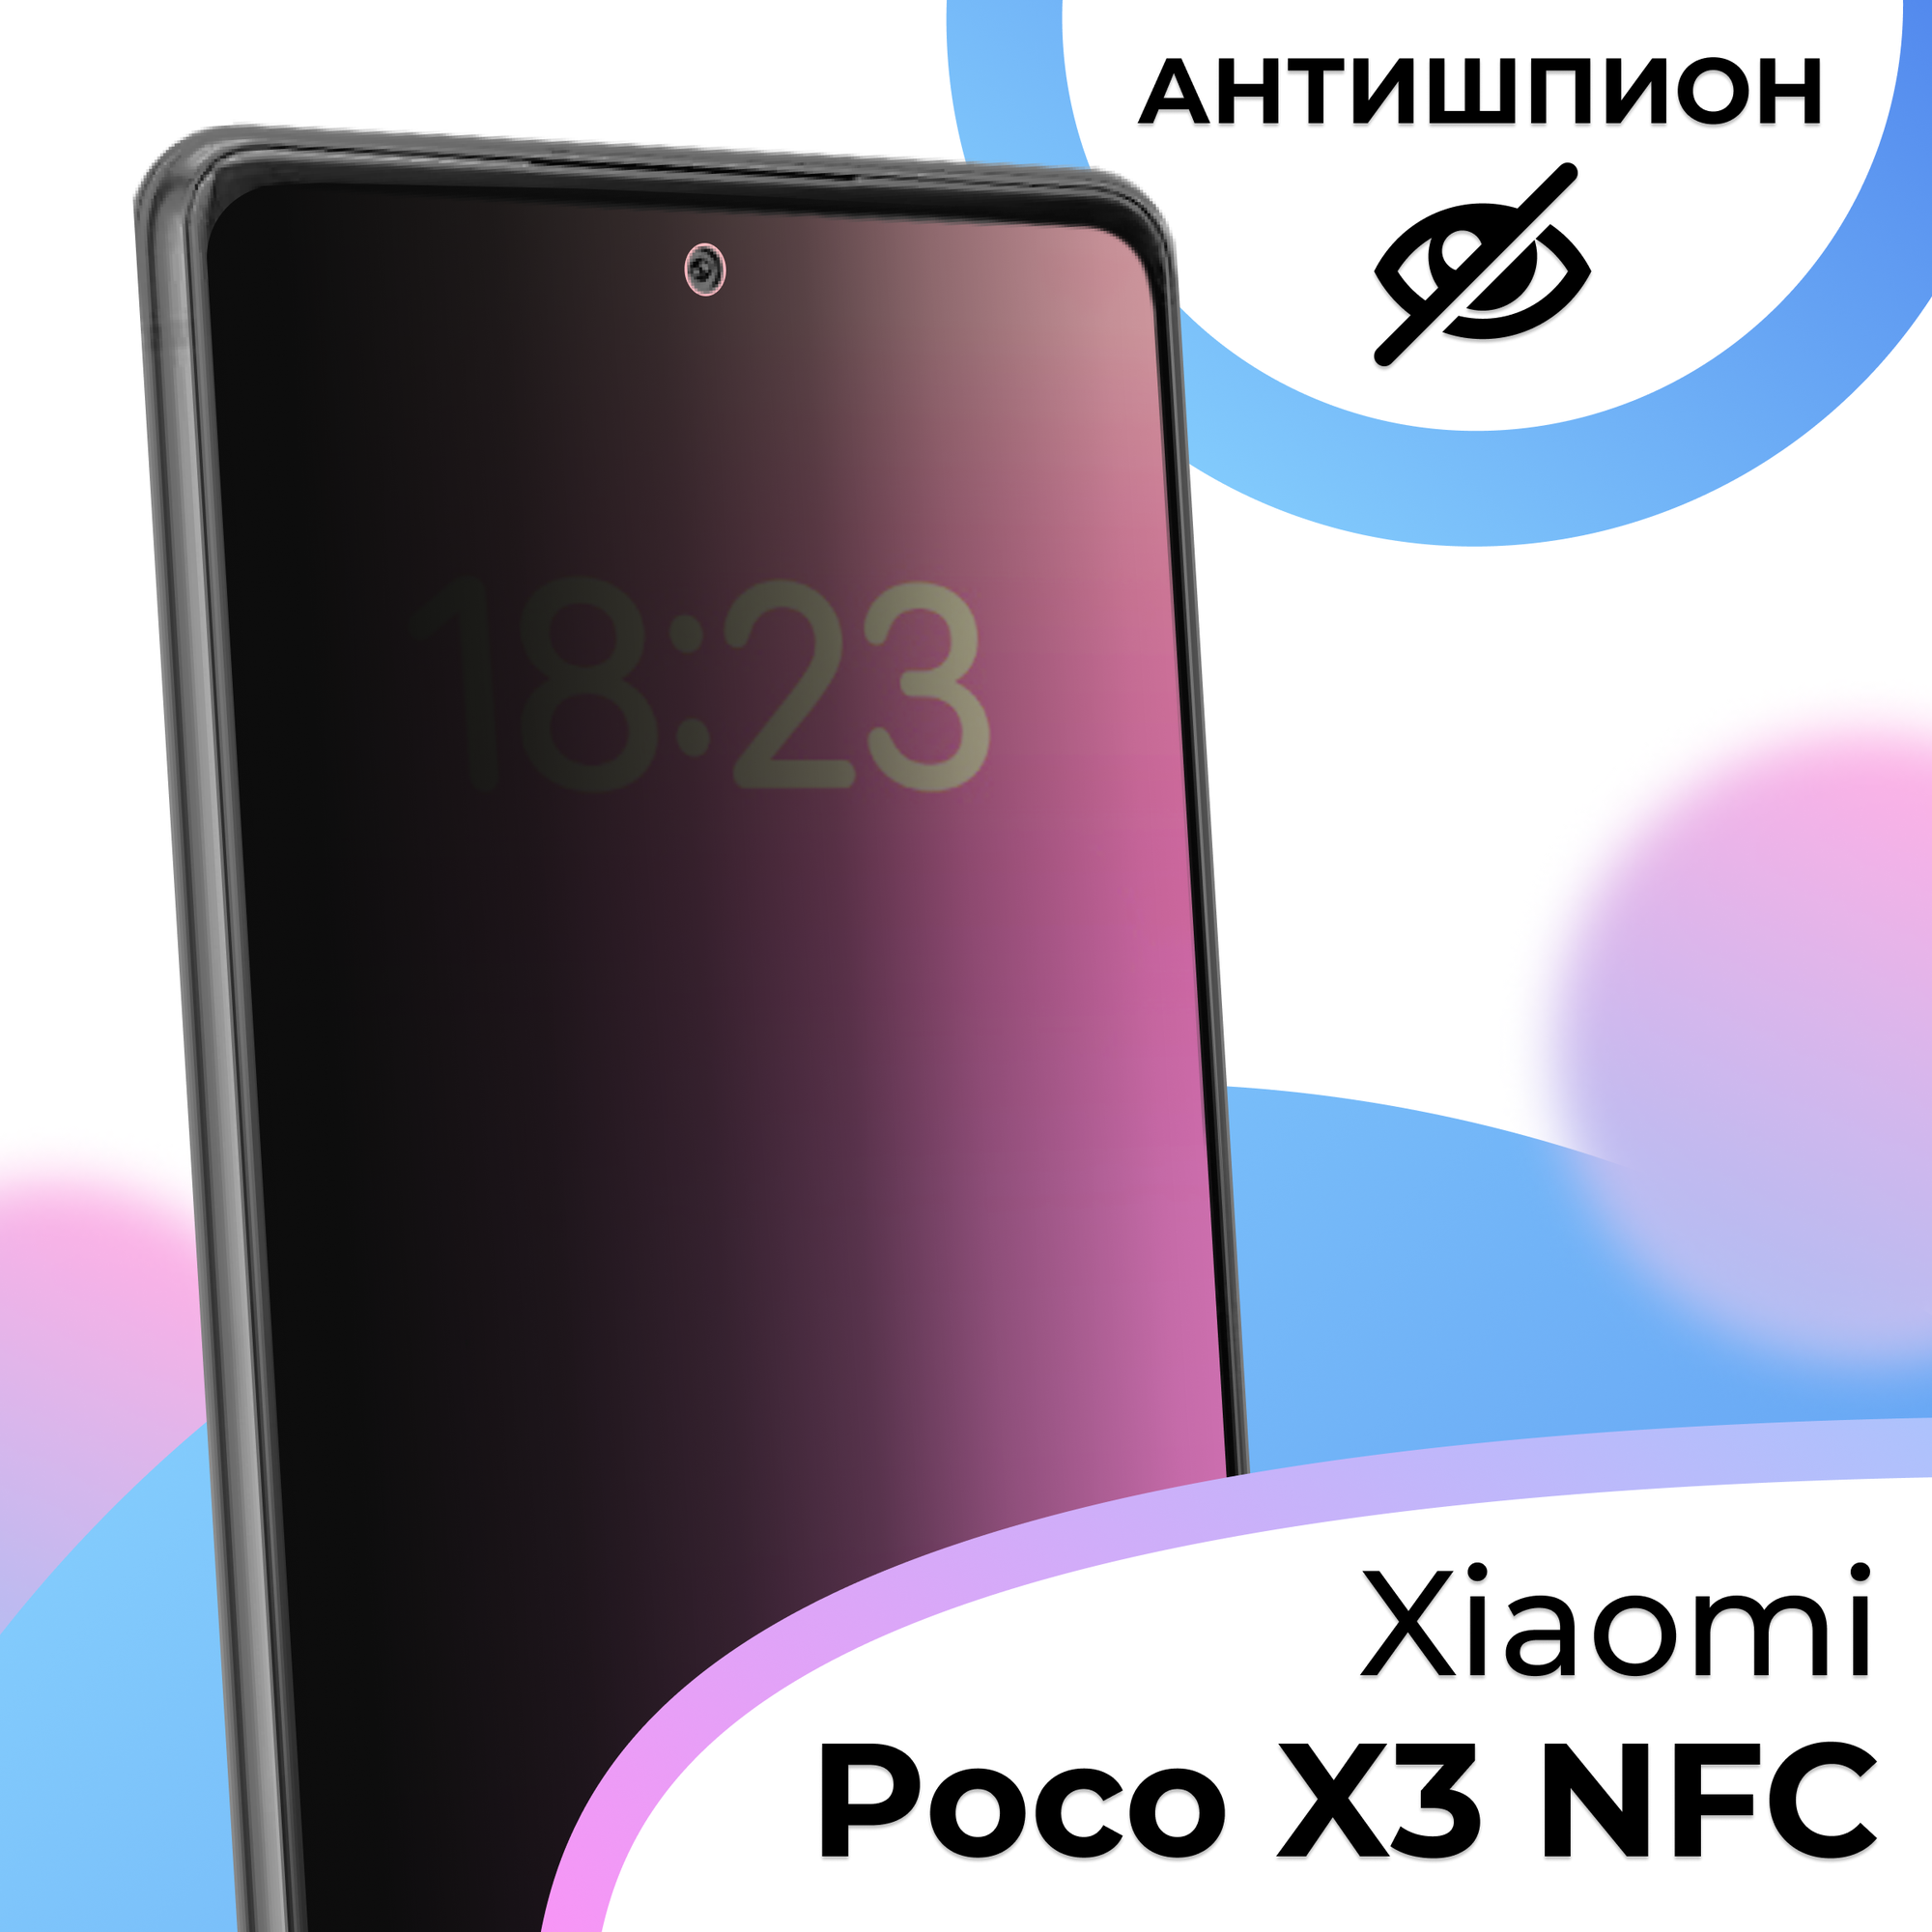 Противоударное защитное стекло антишпион для смартфона Xiaomi Poco X3 NFC / Полноэкранное стекло с олеофобным покрытием на телефон Сяоми Поко Х3 НФС